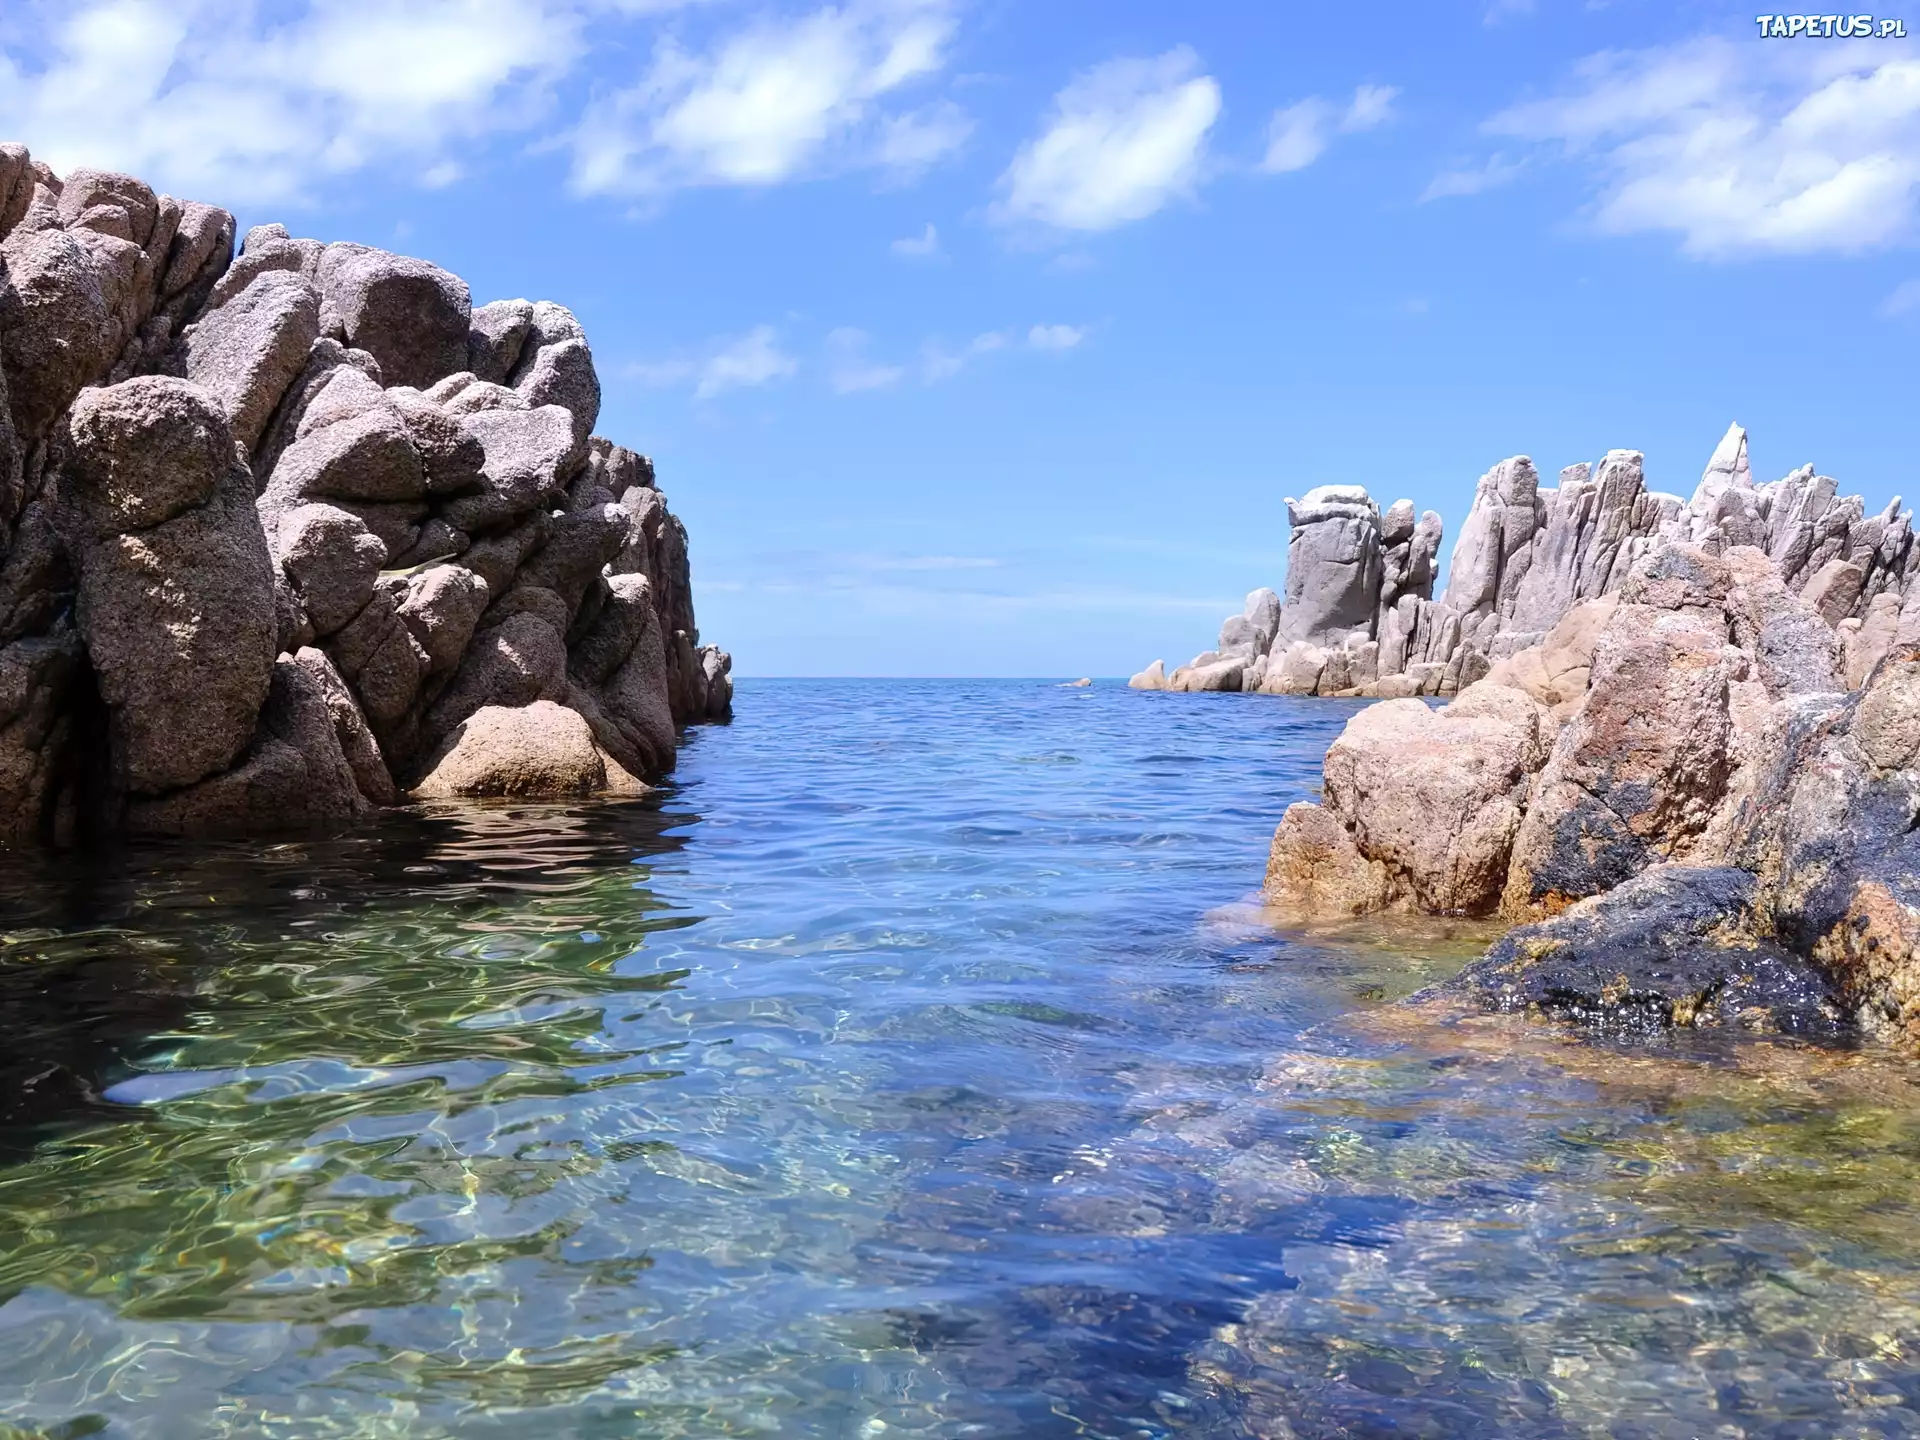 Берег высокая скала. Море скалы. Камни на берегу. Скалы в воде. Небольшие скалы в море.